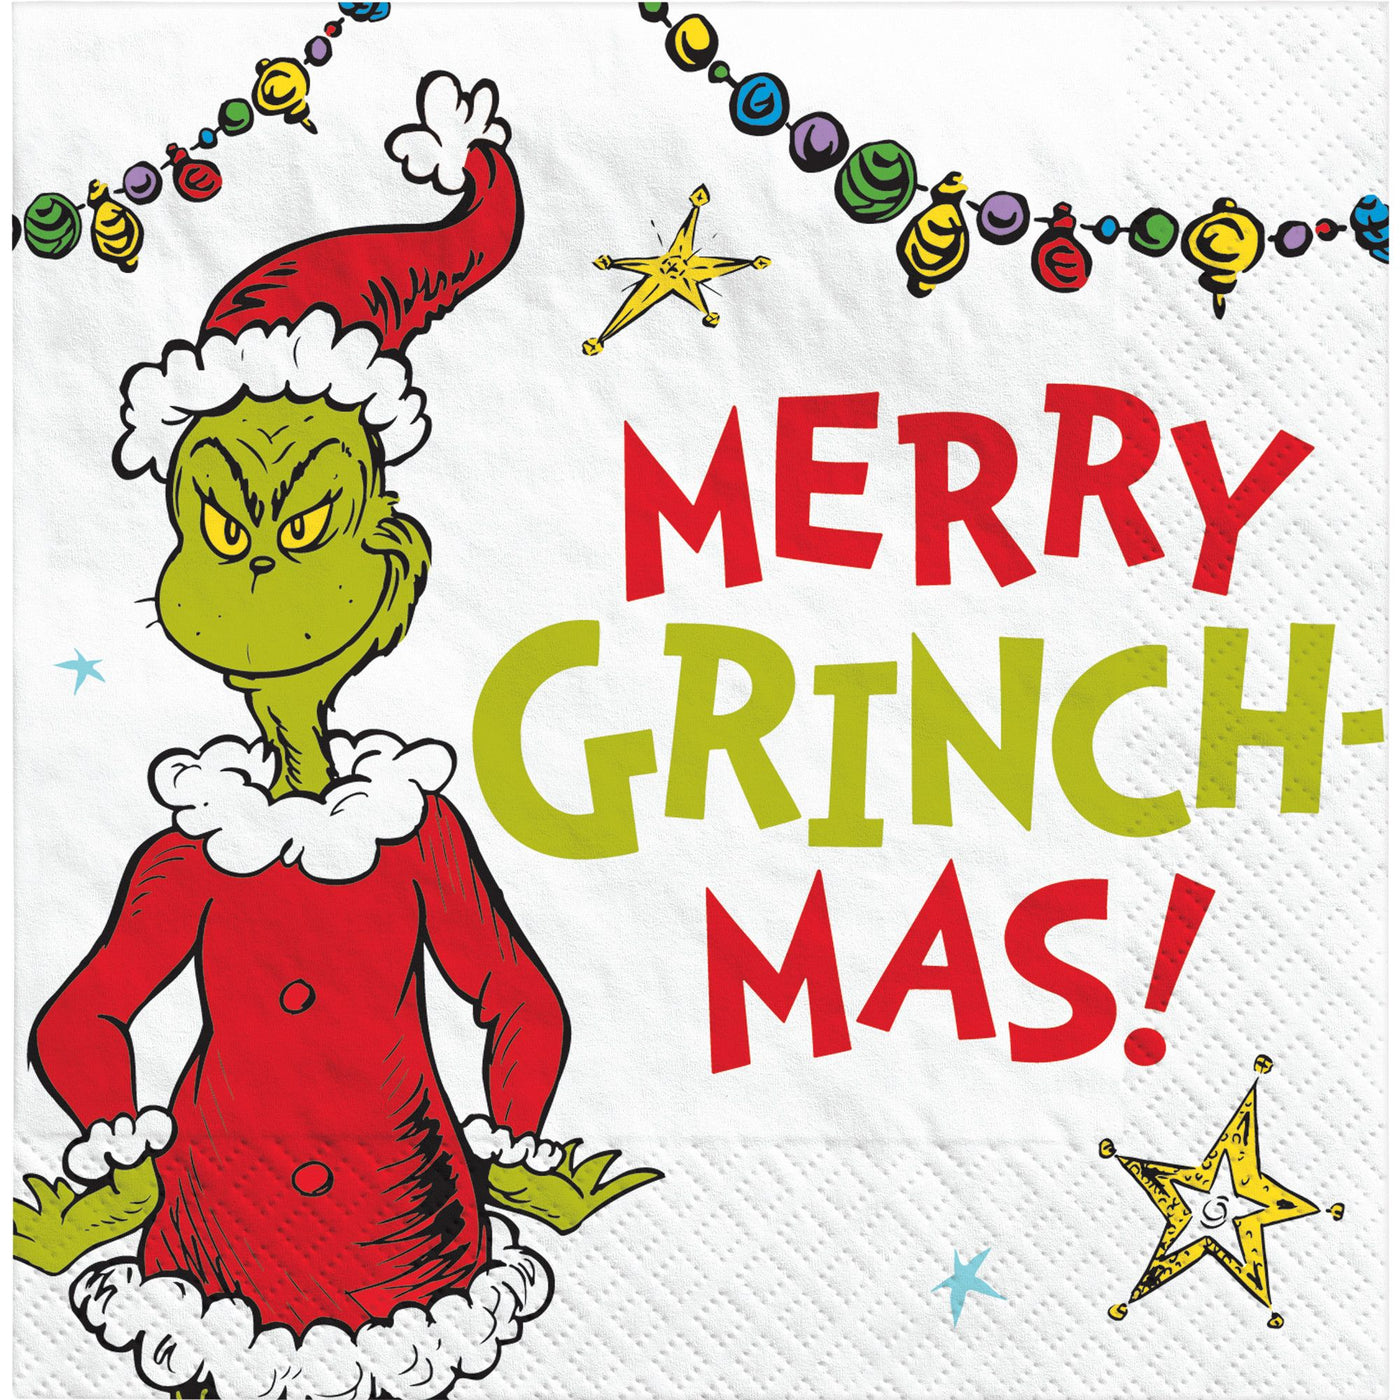 Serviettes traditionnelles de Merry Grinch-mas